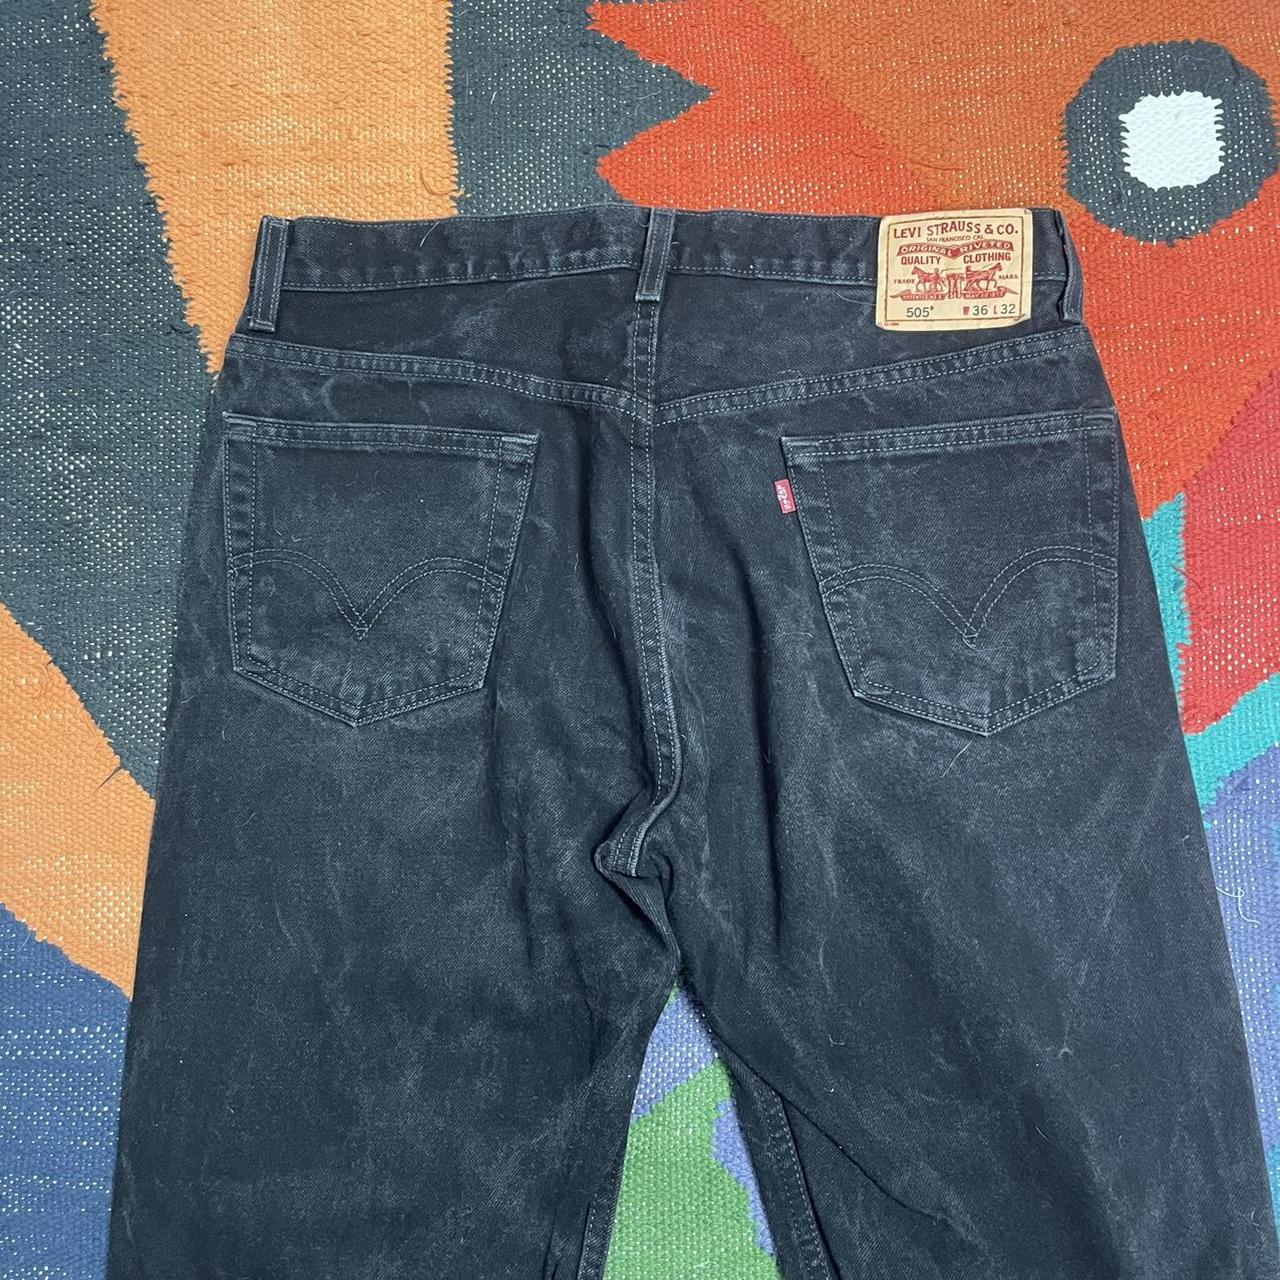 Levi’s 505 Vintage Black Jeans Denim, Marbled Fade,... - Depop